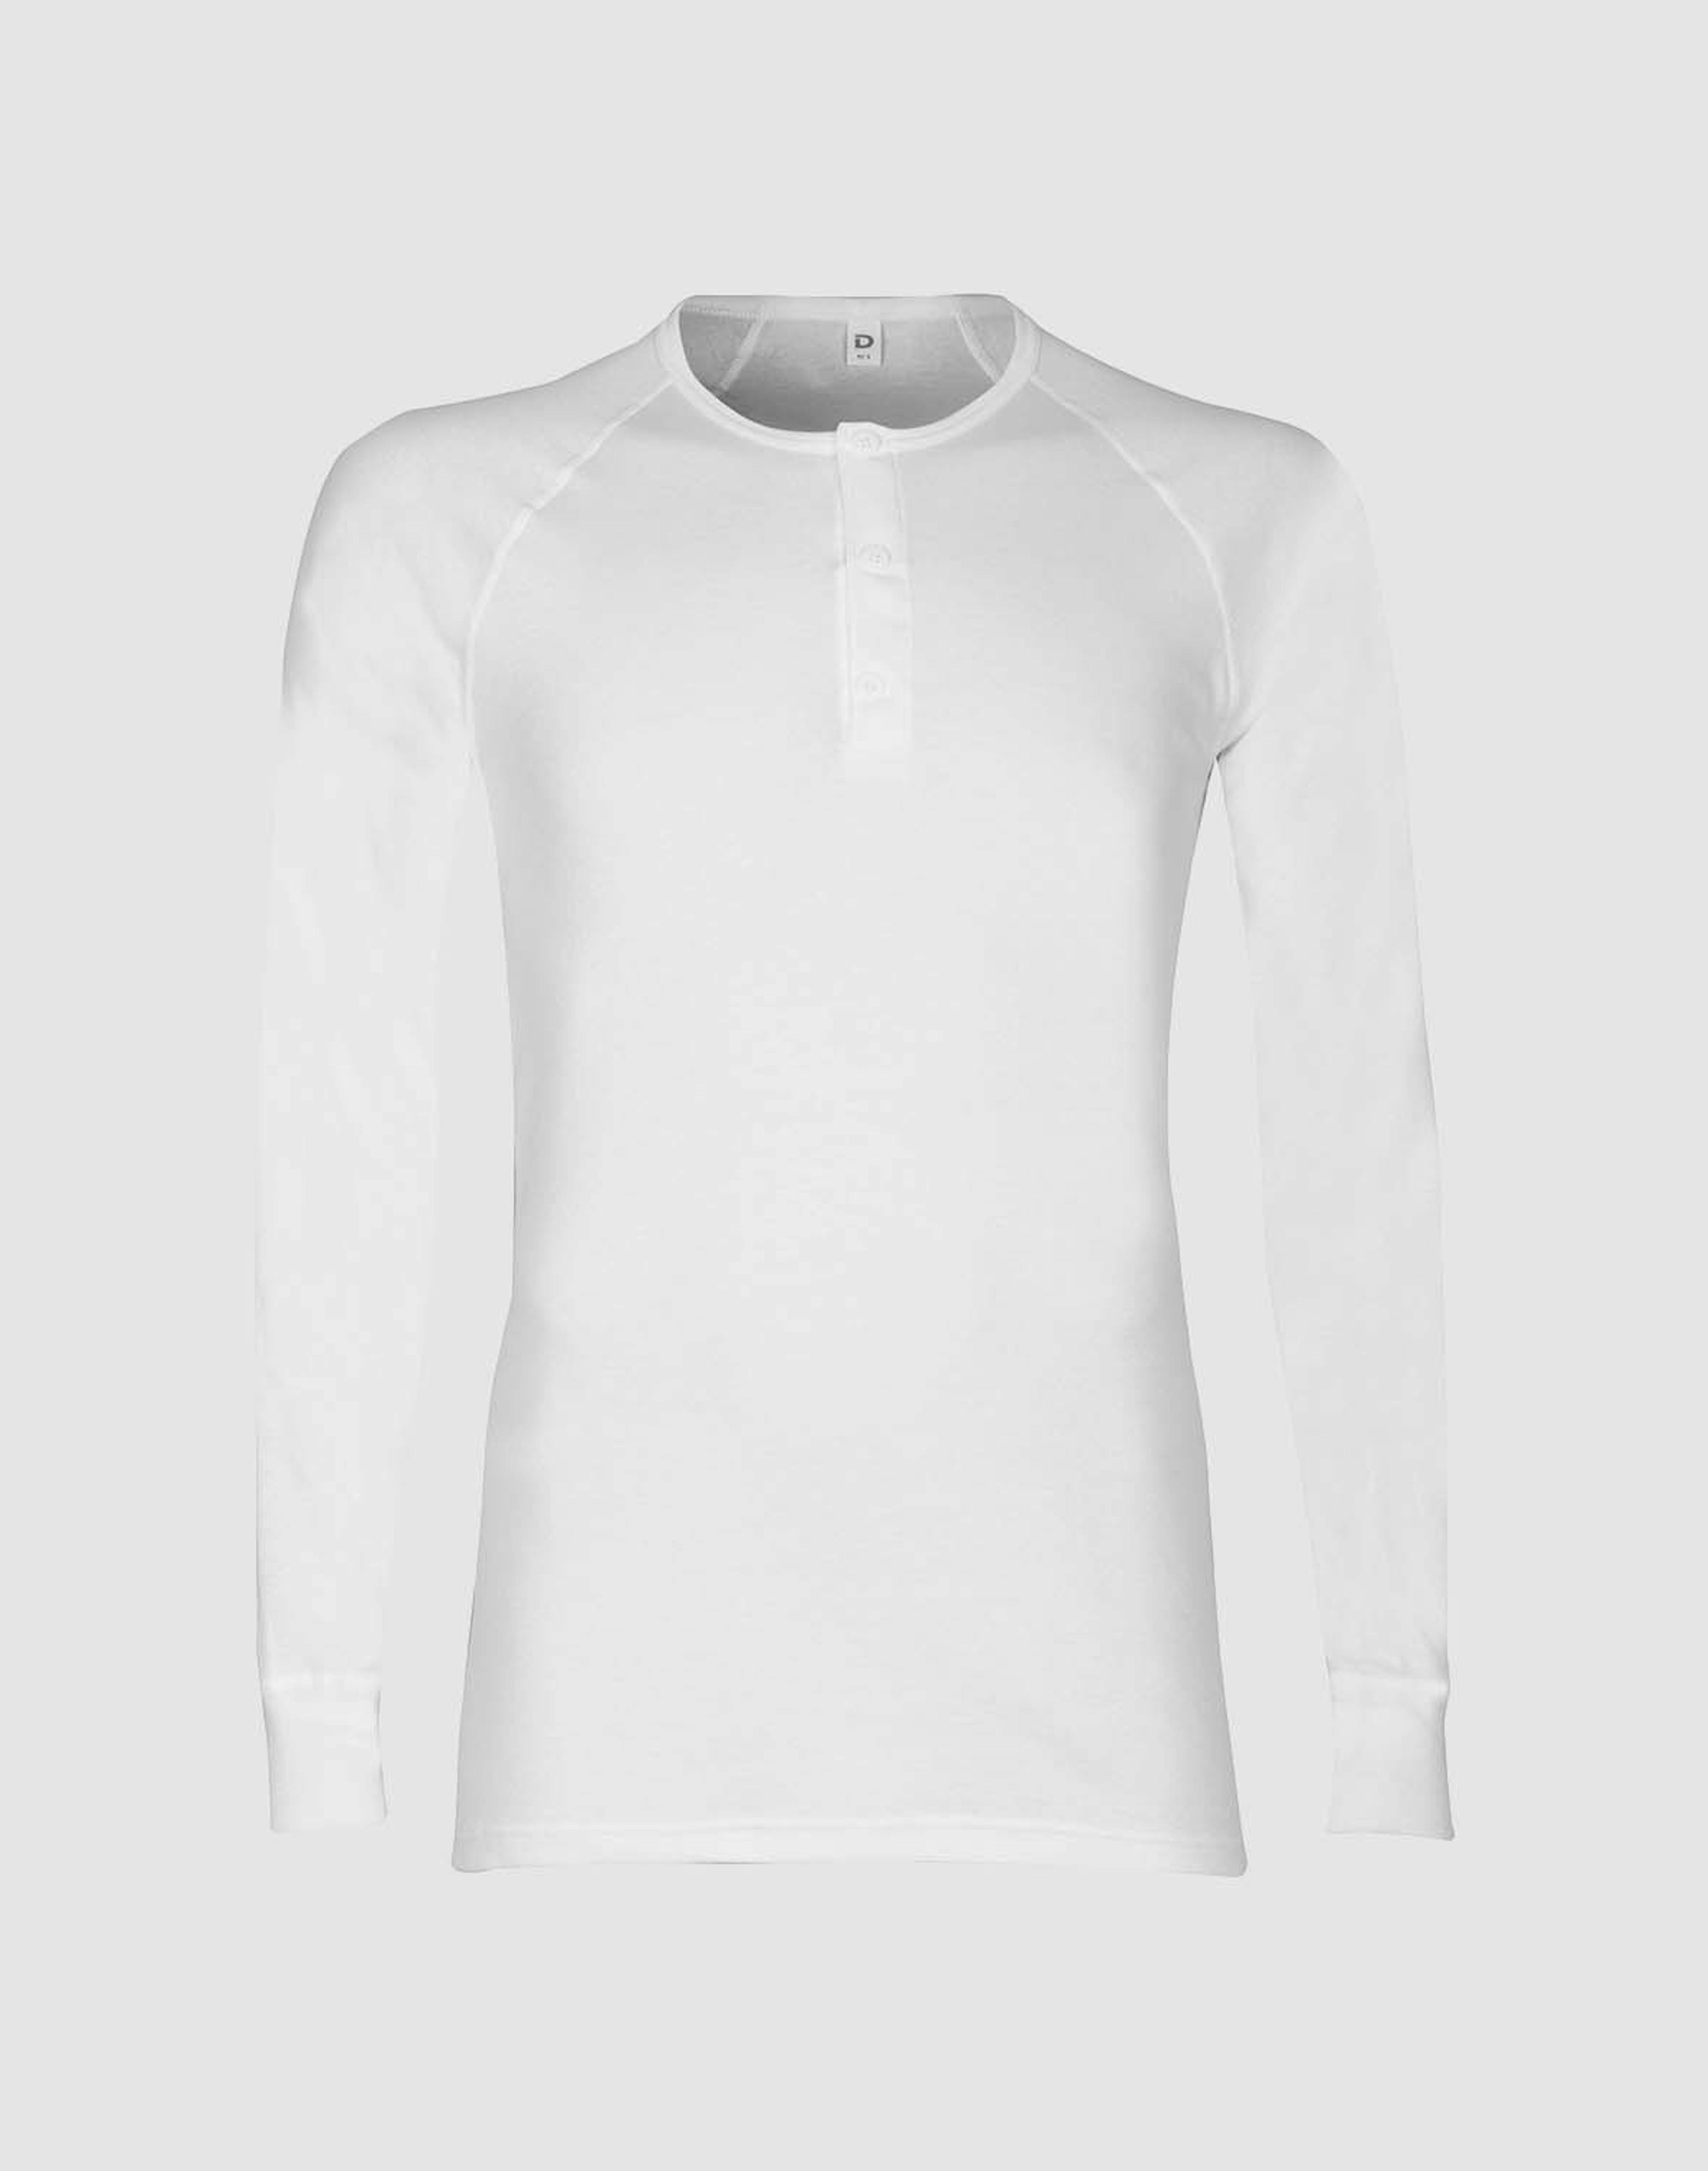 Premium classique - tee-shirt à manches longues en coton pour homme - Blanc  - Dilling